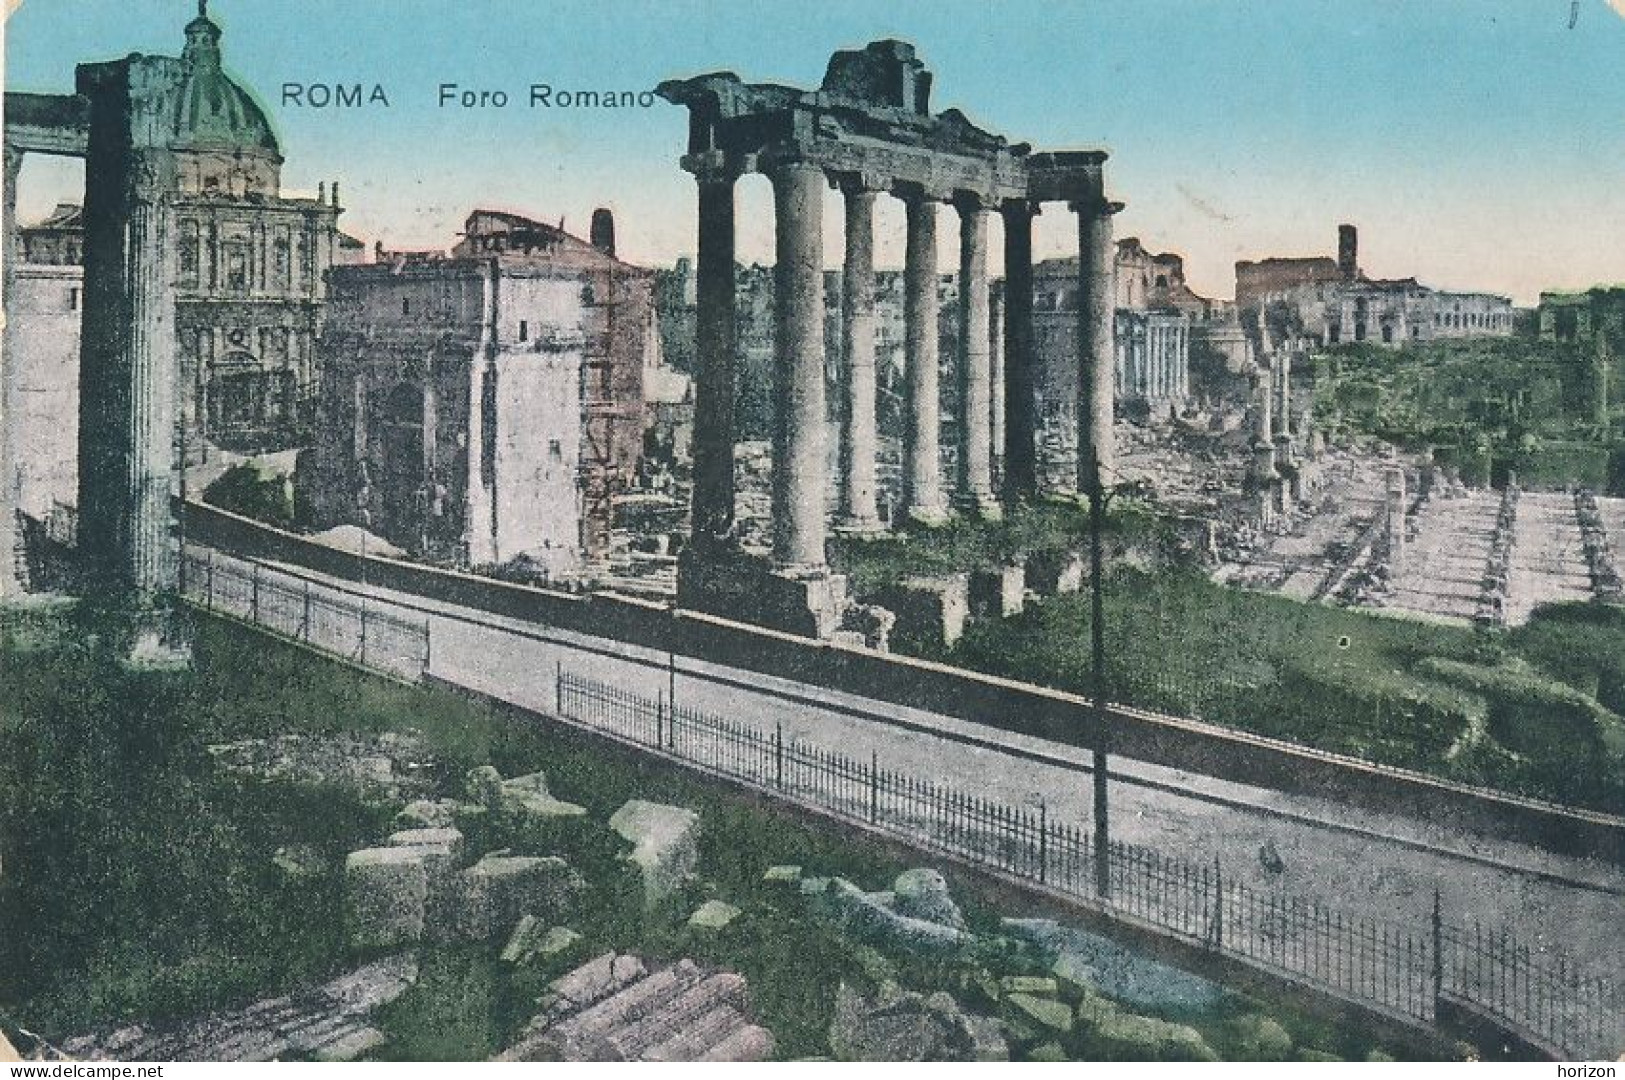 2h.421  ROMA - Lotto di 19 vecchie cartoline, tutte viaggiate e affrancate